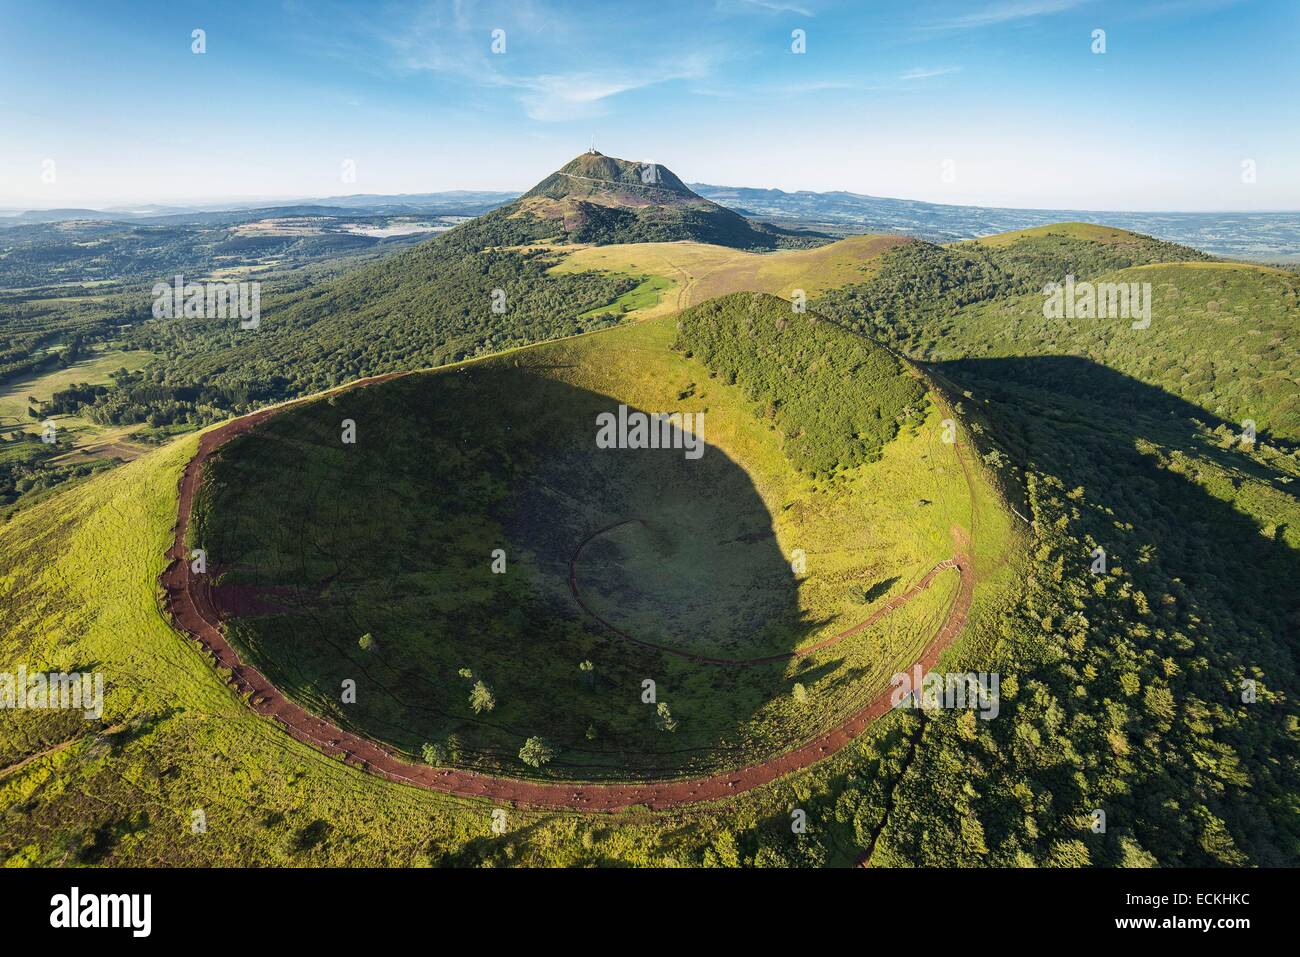 Frankreich, Puy de Dome, der regionale Naturpark der Chaine des Puys, Orcines, Puy Pariou Vulkan-Krater, die Vulkane der Auvergne, der Puy de Dome-Vulkan im Hintergrund (Luftbild) Stockfoto